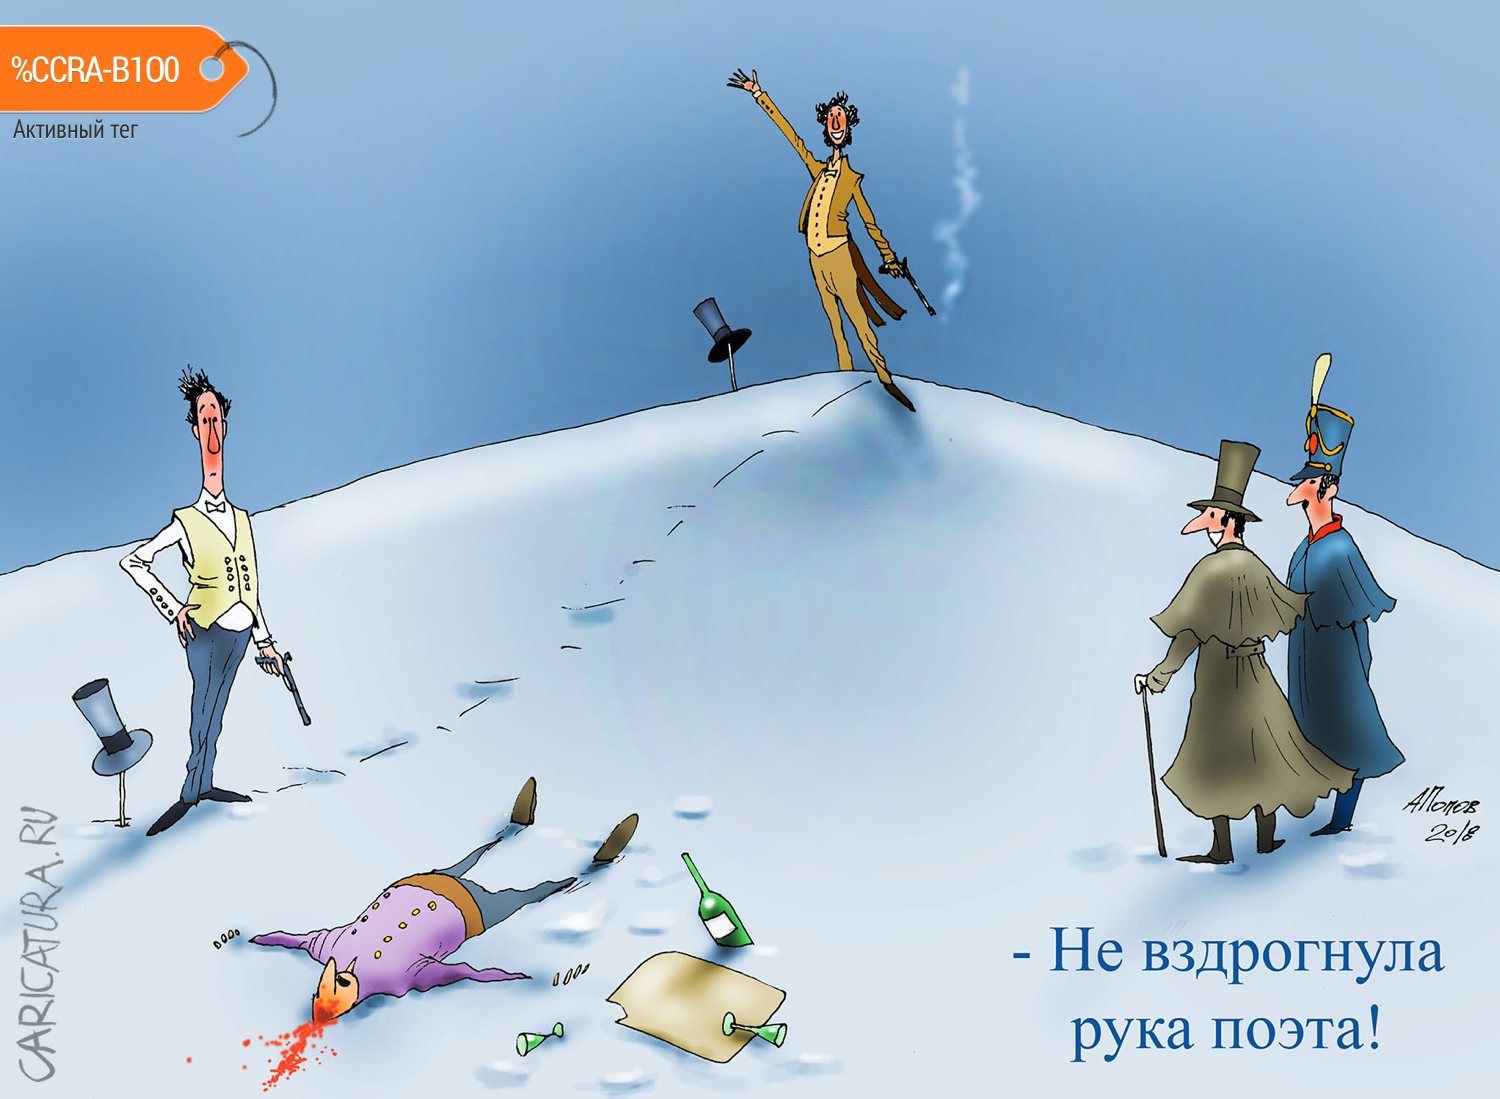 Карикатура "Пробный выстрел", Александр Попов